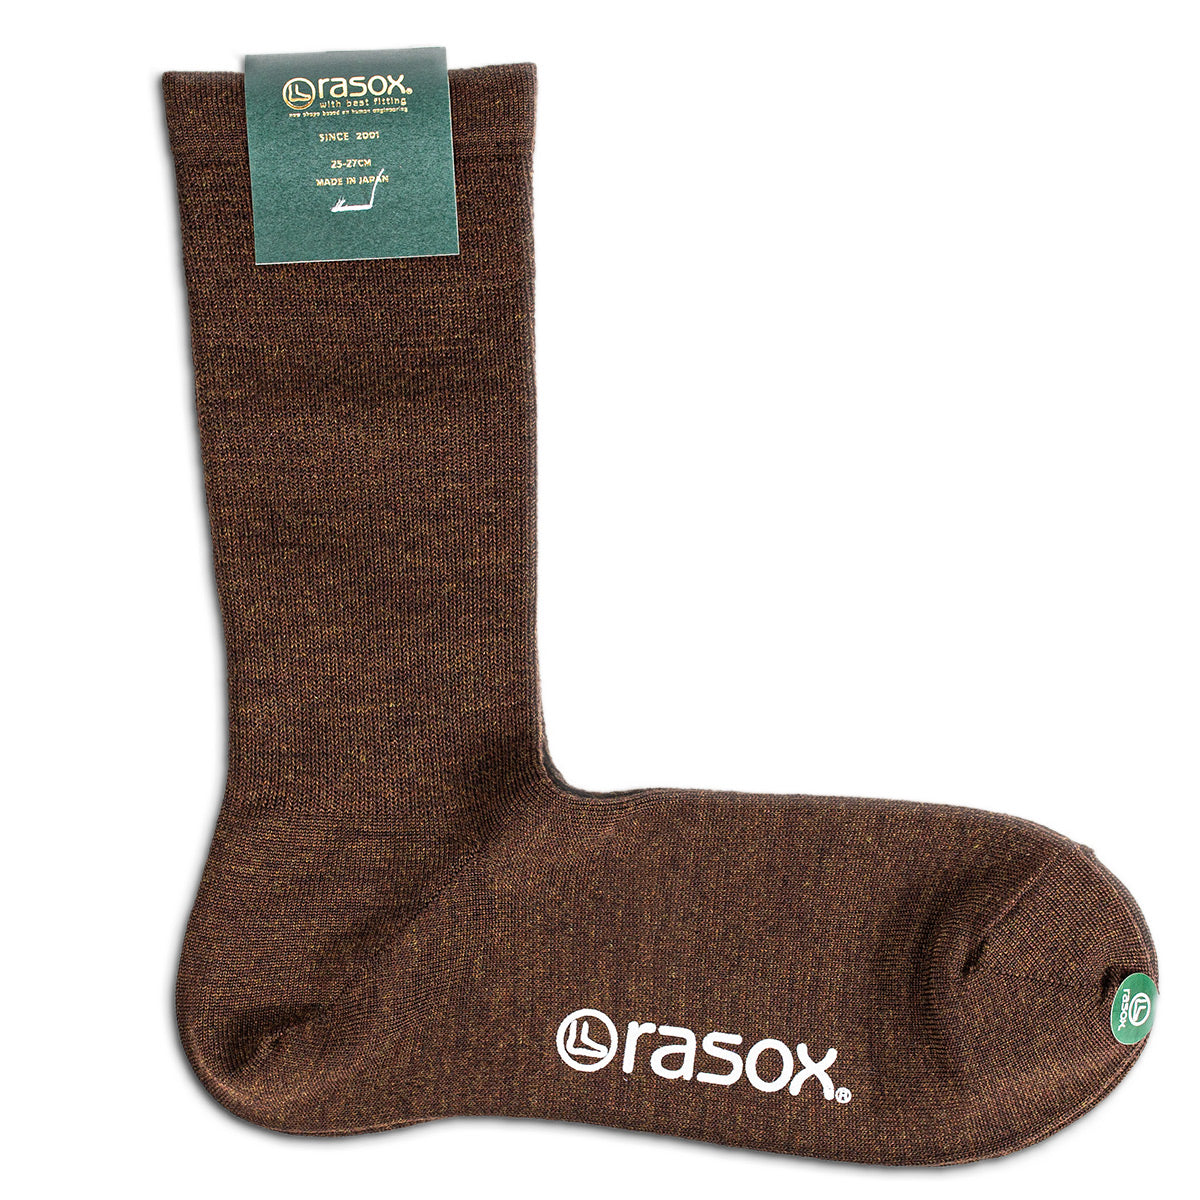 rasox ラソックス クルーソックス ビジネス用 フォーマル 靴下 マーセライズドコットン